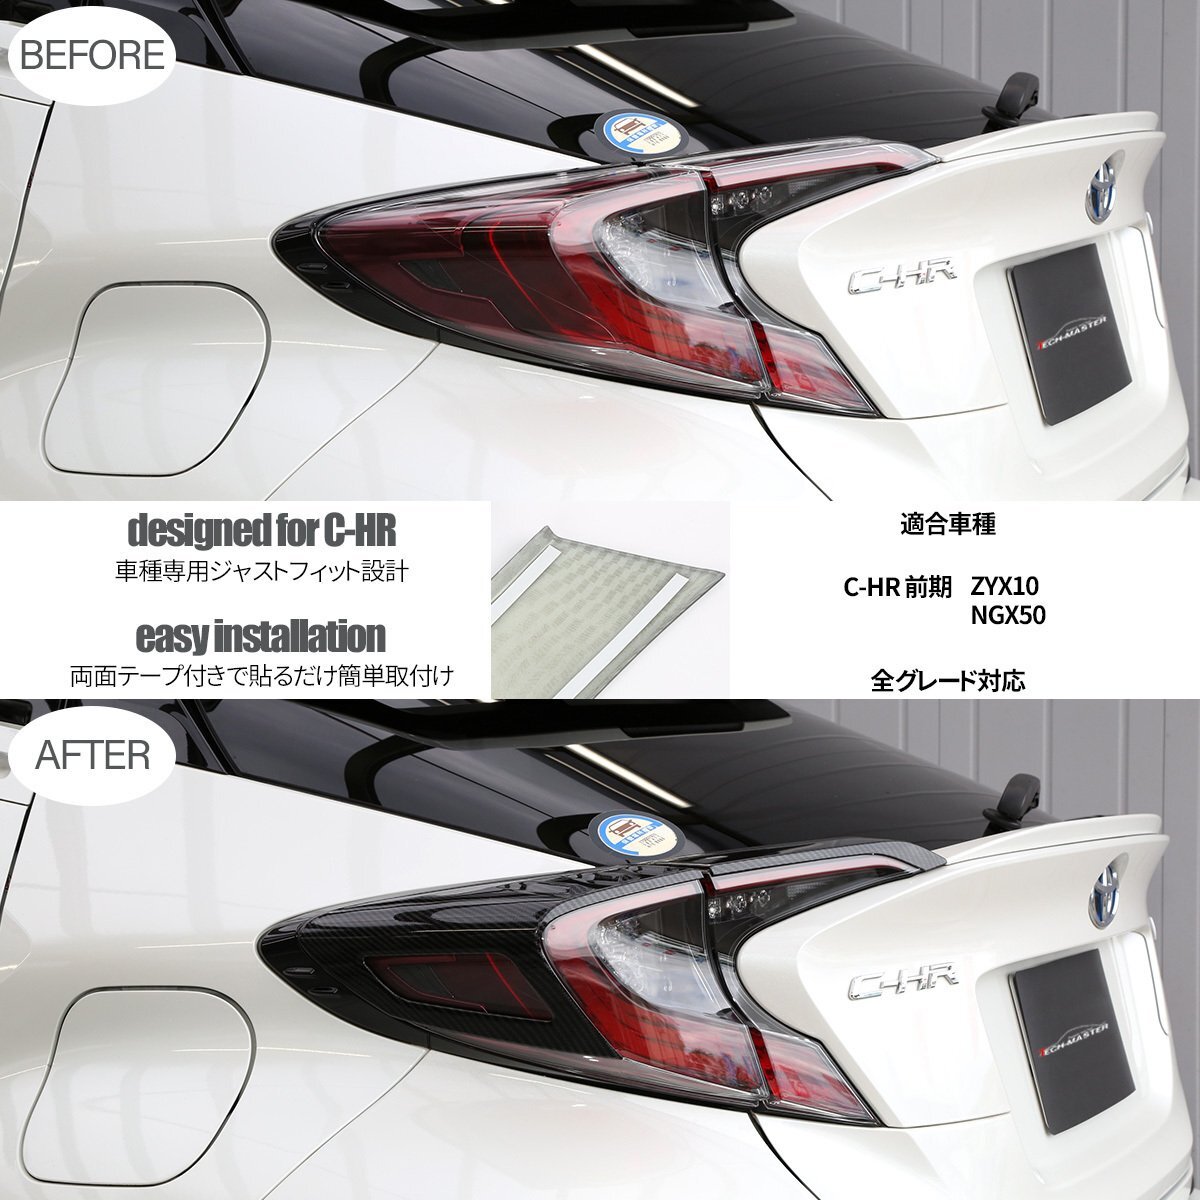 C-HR 前期 専用設計 テールランプ ガーニッシュ ABS樹脂製 カーボン調 リア ライト カバー ZYX10 NGX50 LB0015_画像3